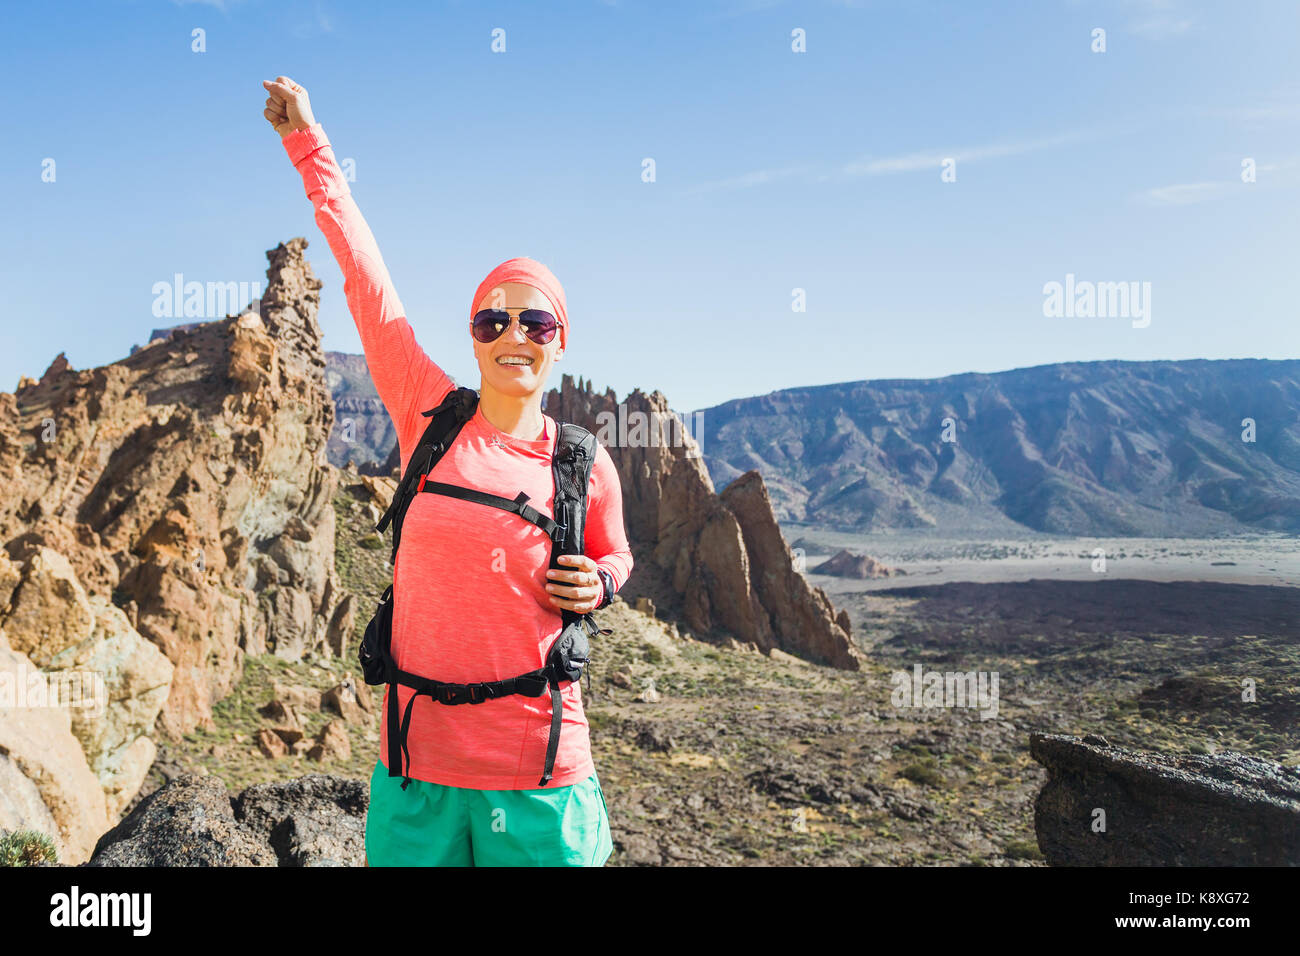 Wandern oder Klettern Erfolg mit erhobenen Armen Konzept. Läuferin oder Wanderer feiern auf Mountain Top in inspirierende Landschaft auf Rocky Trail Fuß Stockfoto